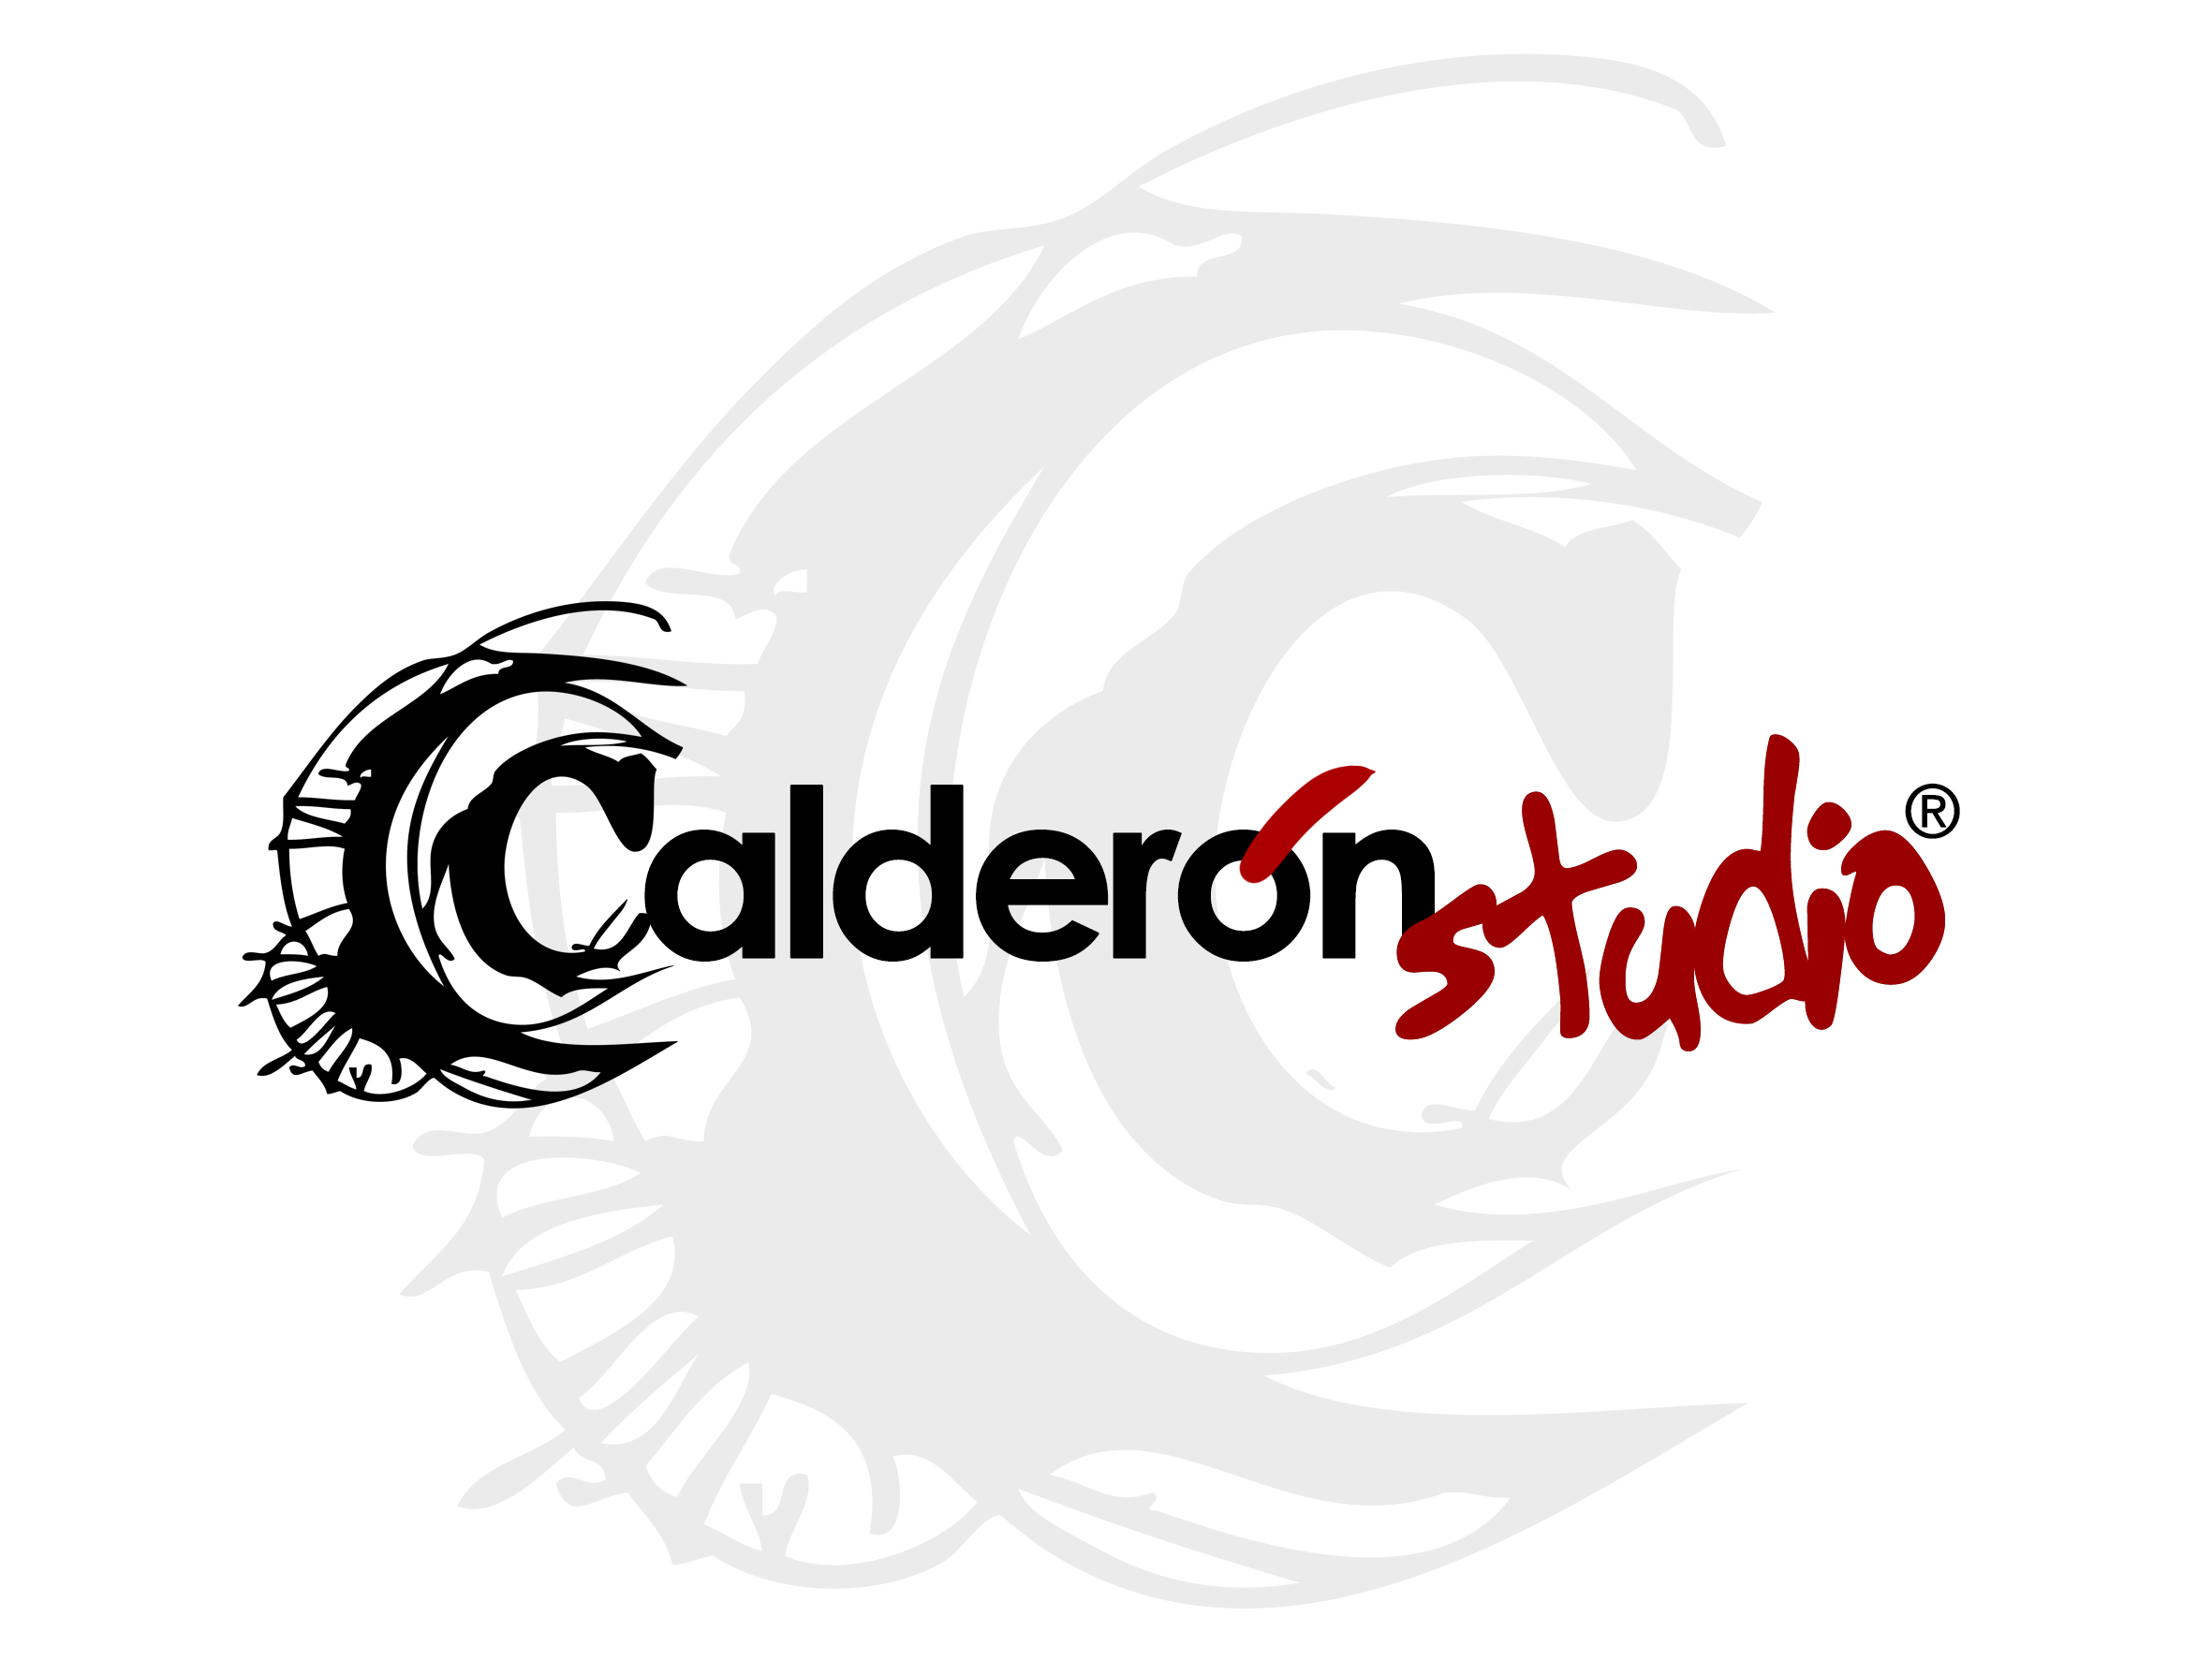 (c) Calderonstudio.com